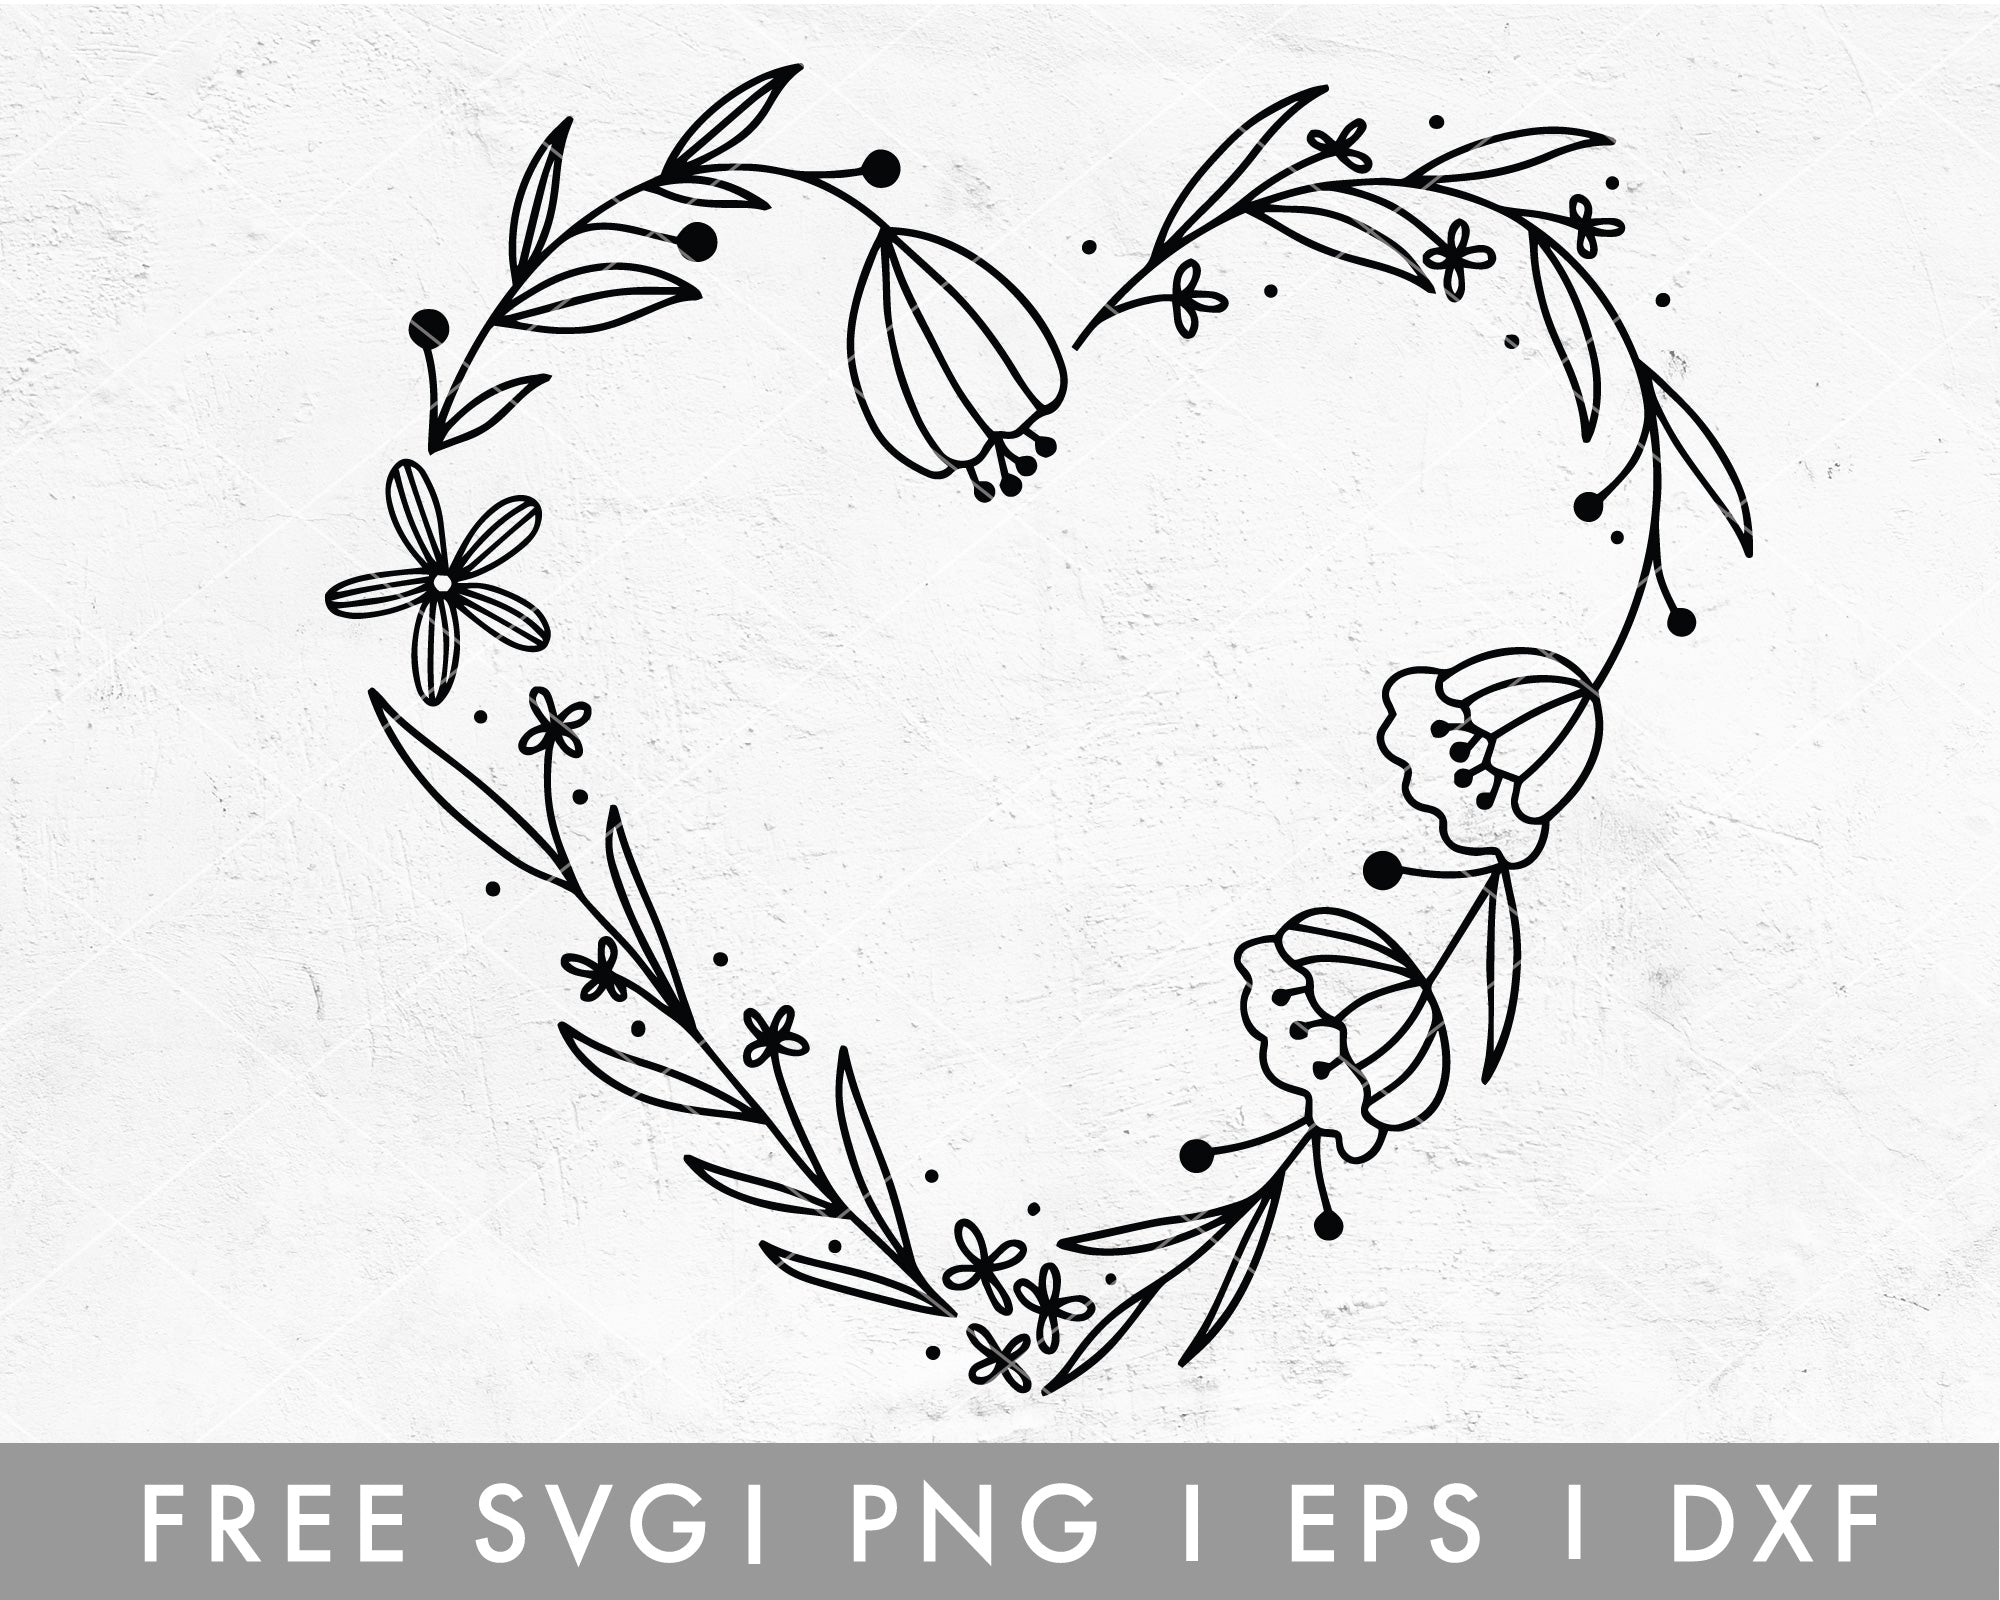 Heart Circle Monogram Frame Svg Heart Svg Frame SVG Files -  Norway